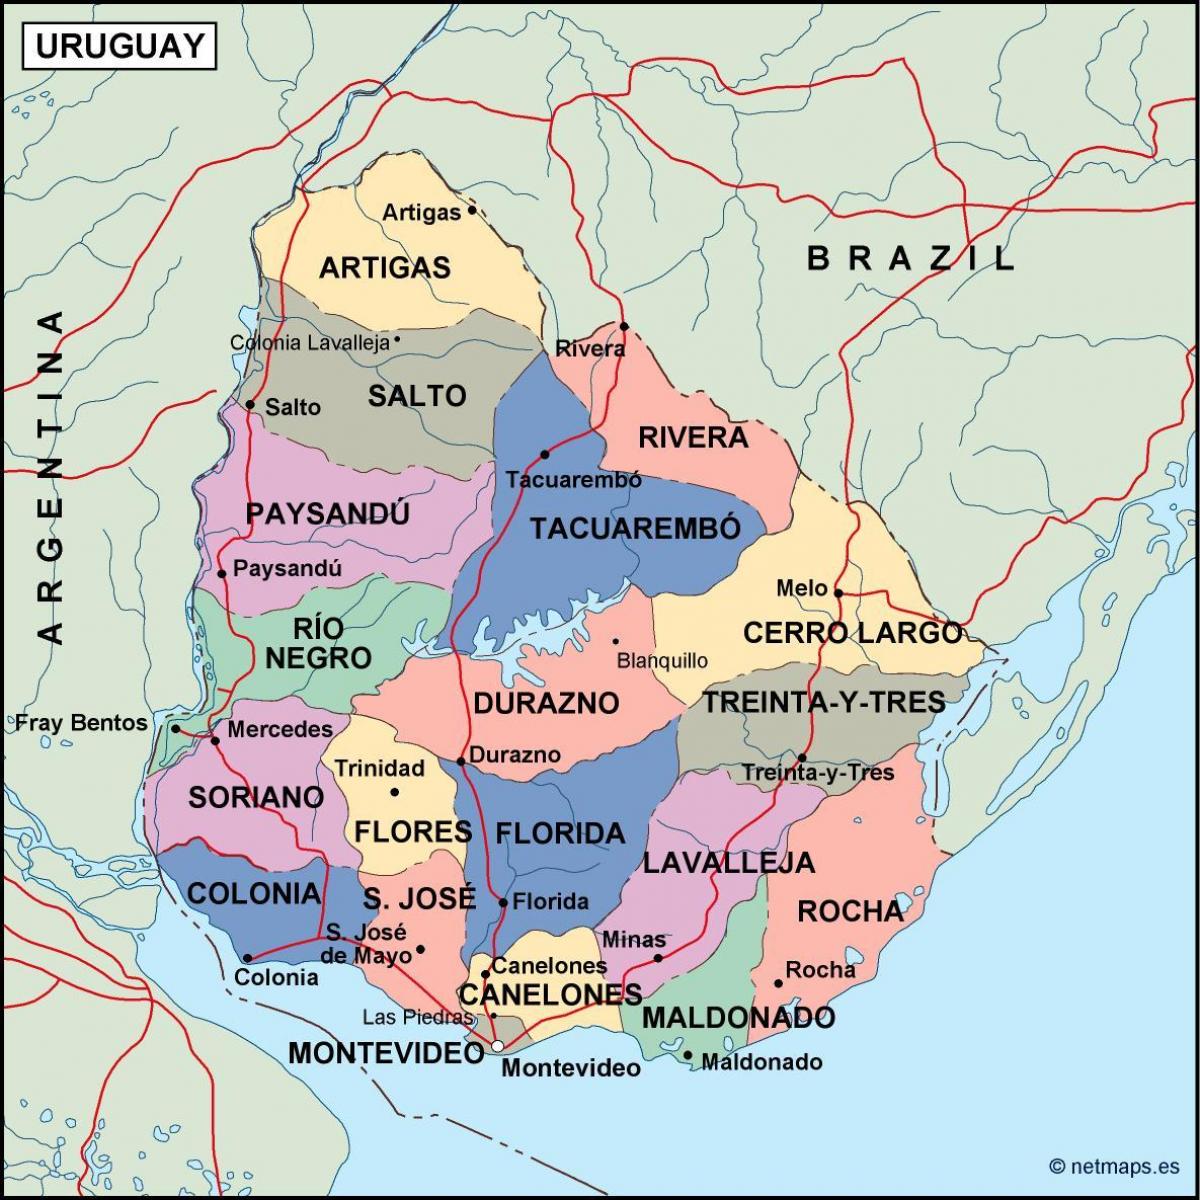 แผนที่ของ uruguay. kgm อุรุกวัย